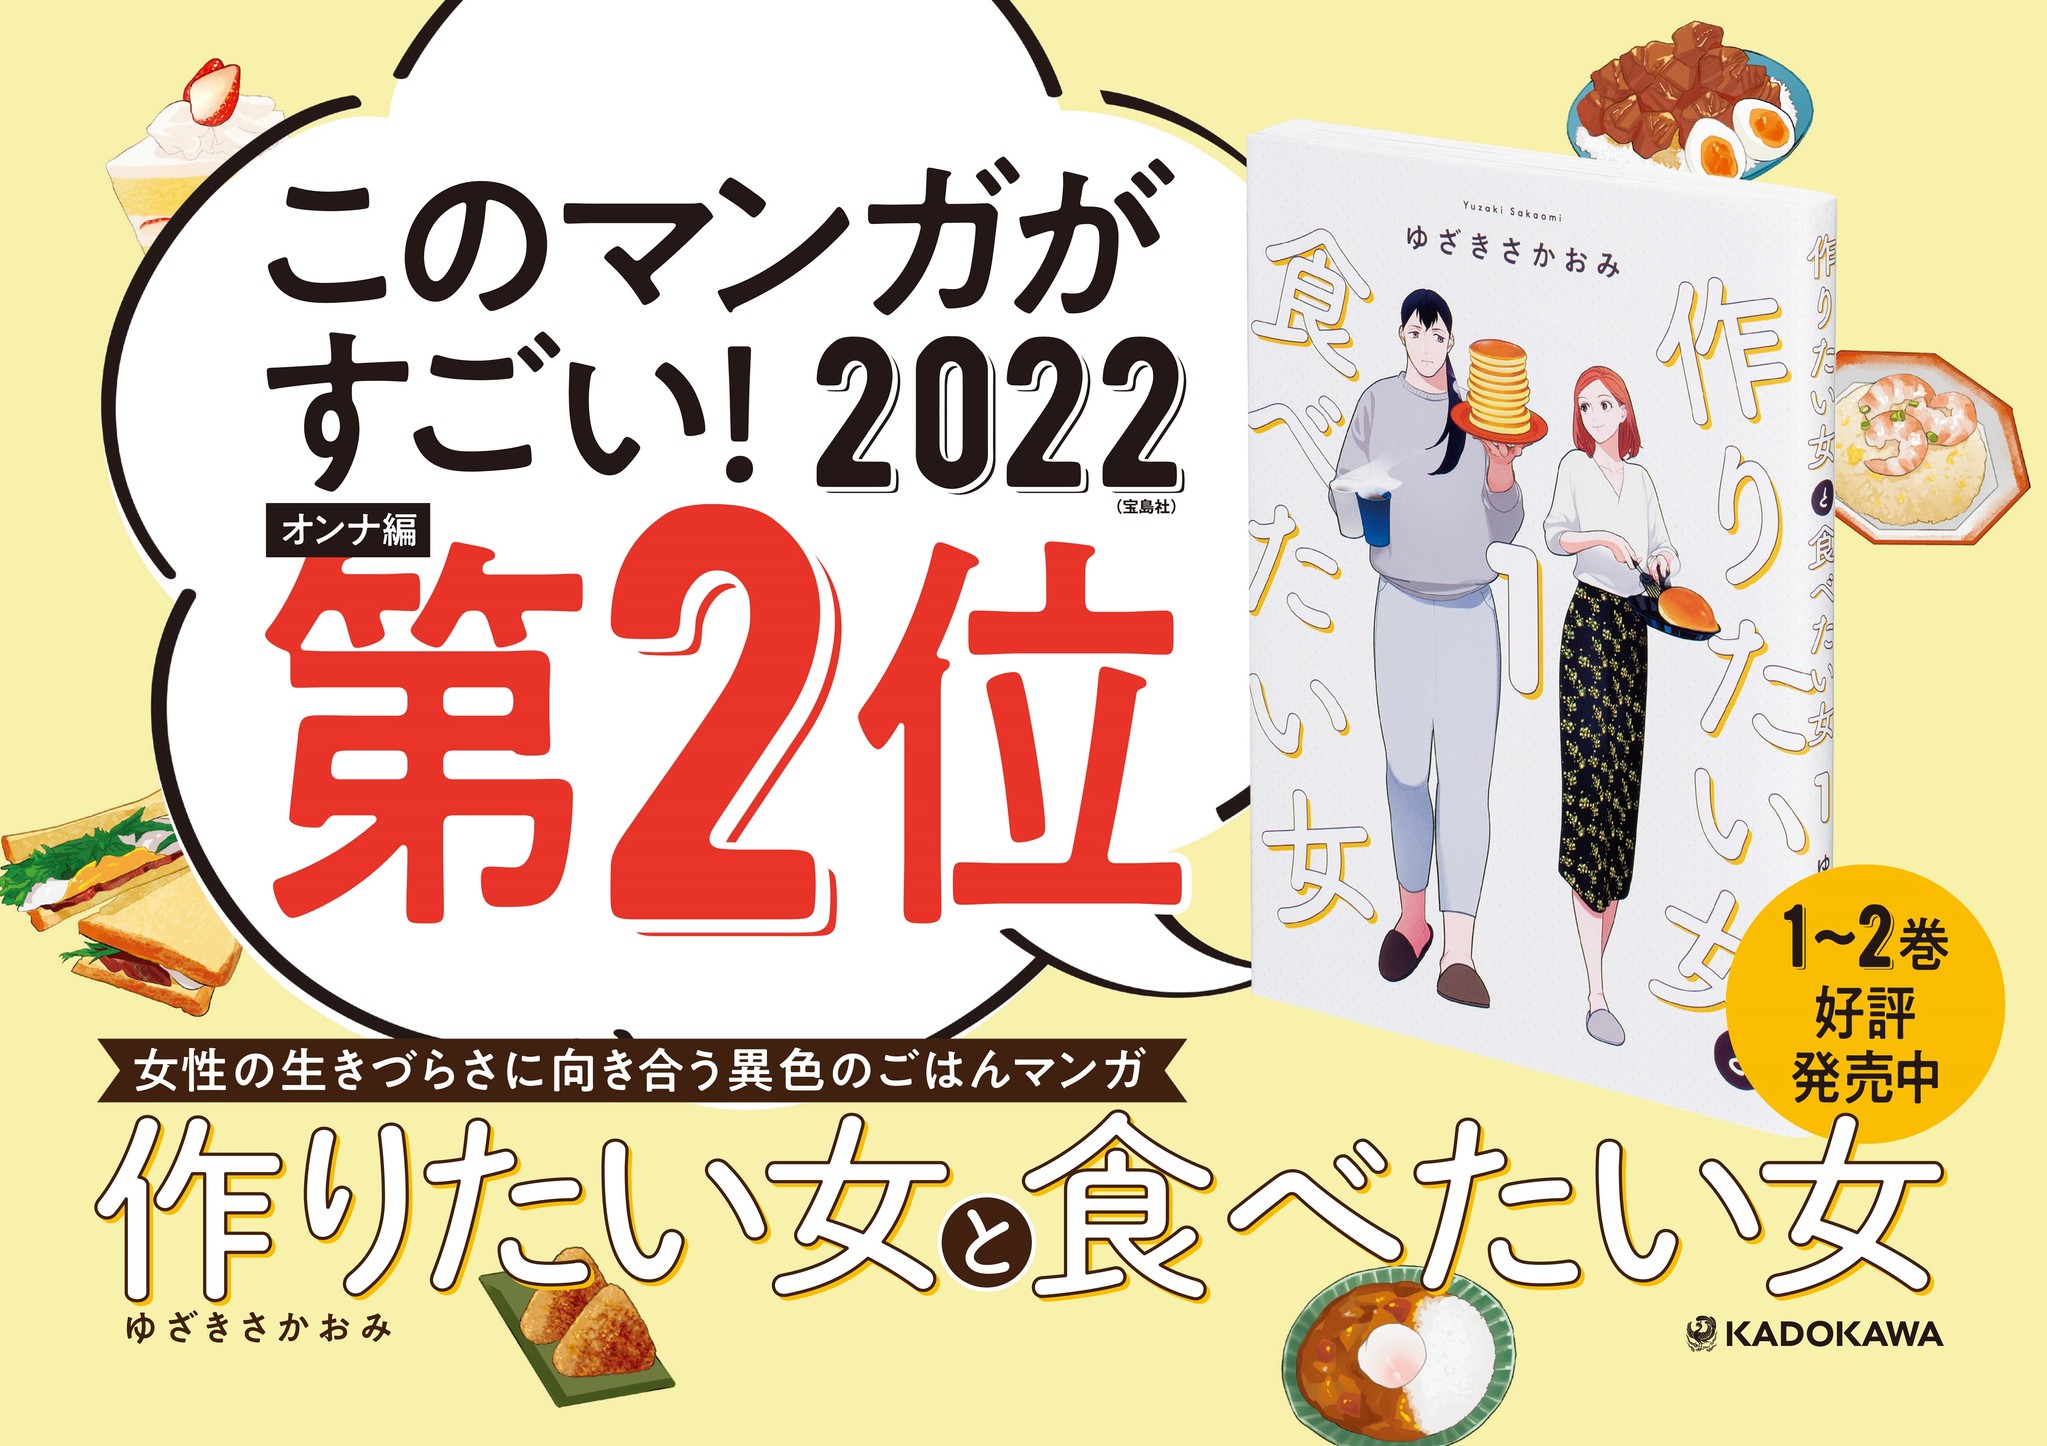 主要マンガ賞1位 2位 21年を代表する1作 圧倒的共感を呼んだ食マンガ 作りたい女と食べたい女 最新2巻登場 株式会社kadokawaのプレスリリース